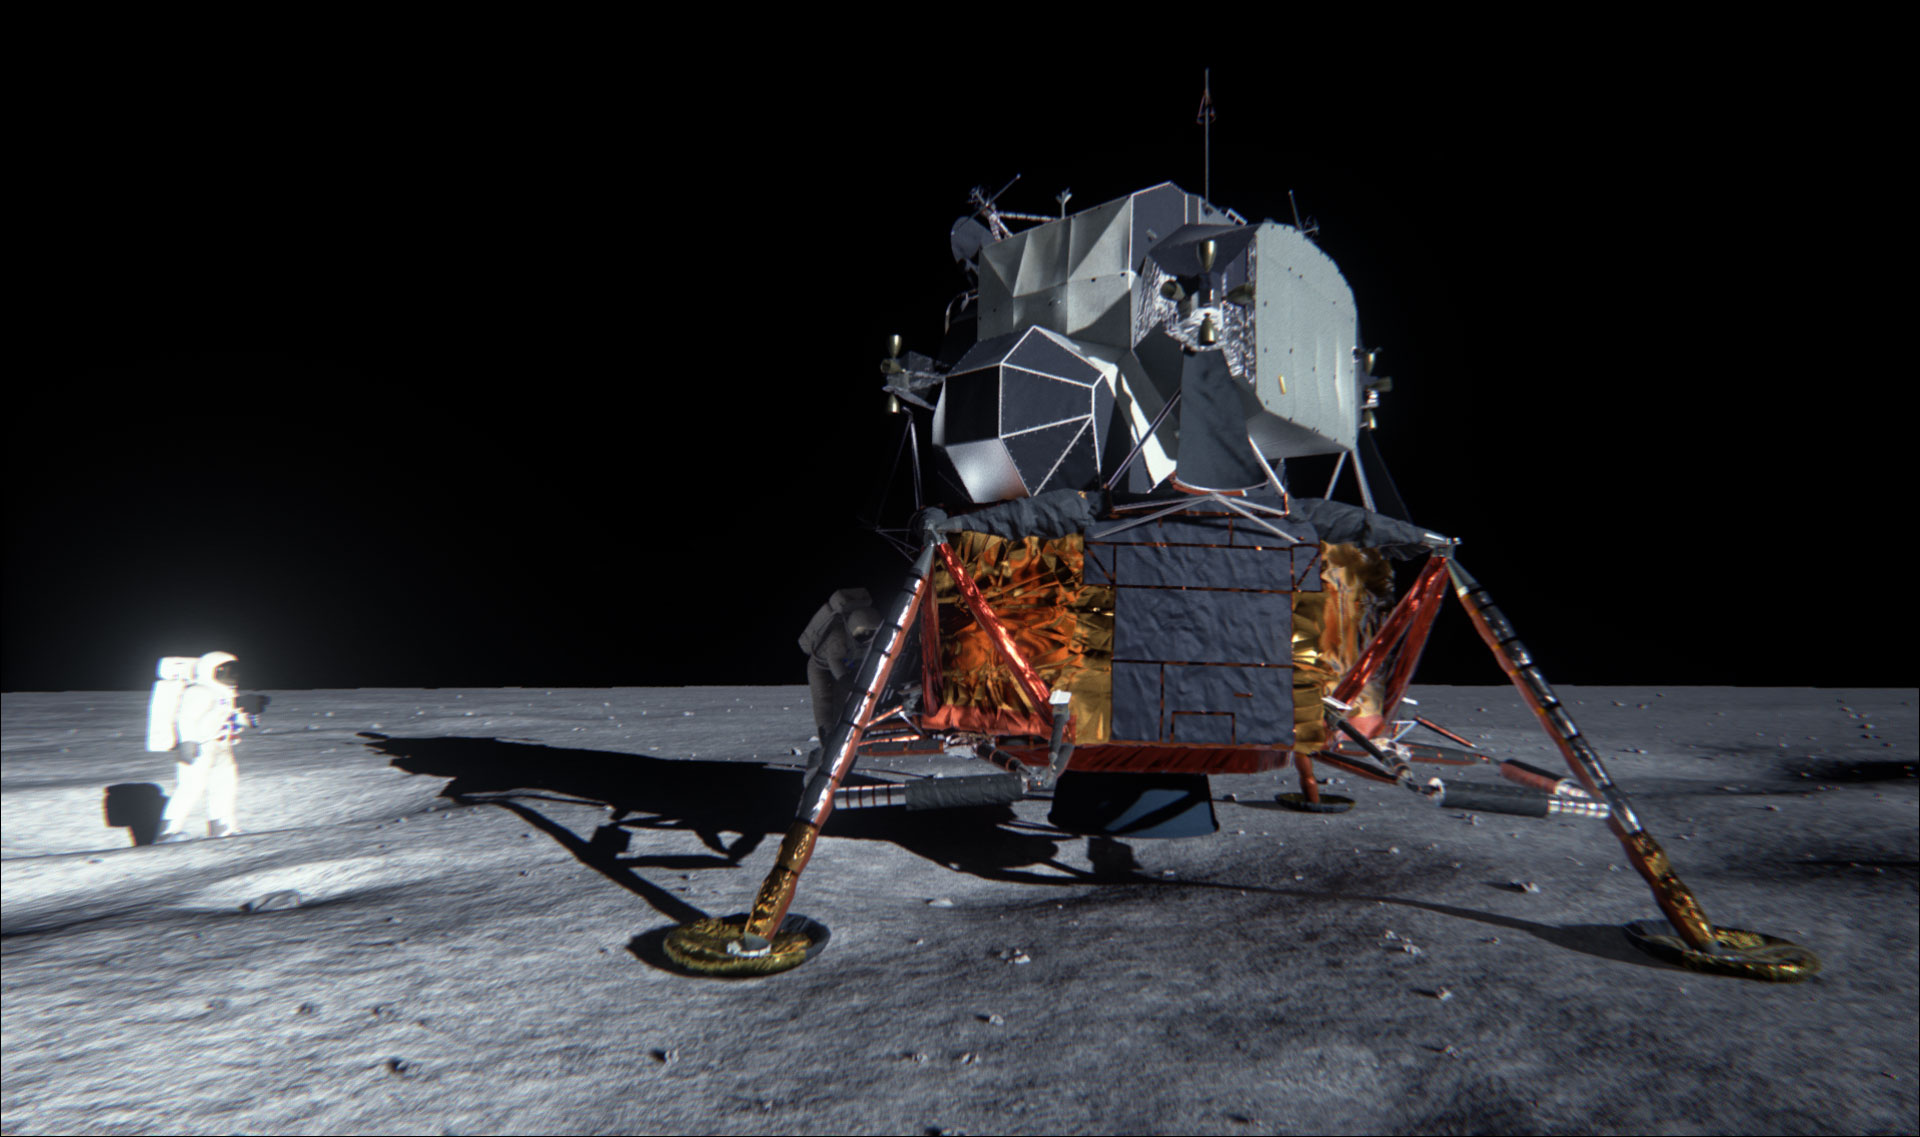 Корабль на поверхности луны. Посадочный модуль Аполлон 11. Лунный модуль корабля Аполлон 11. Корабль Аполлон 11. Лунный посадочный модуль Аполлон.